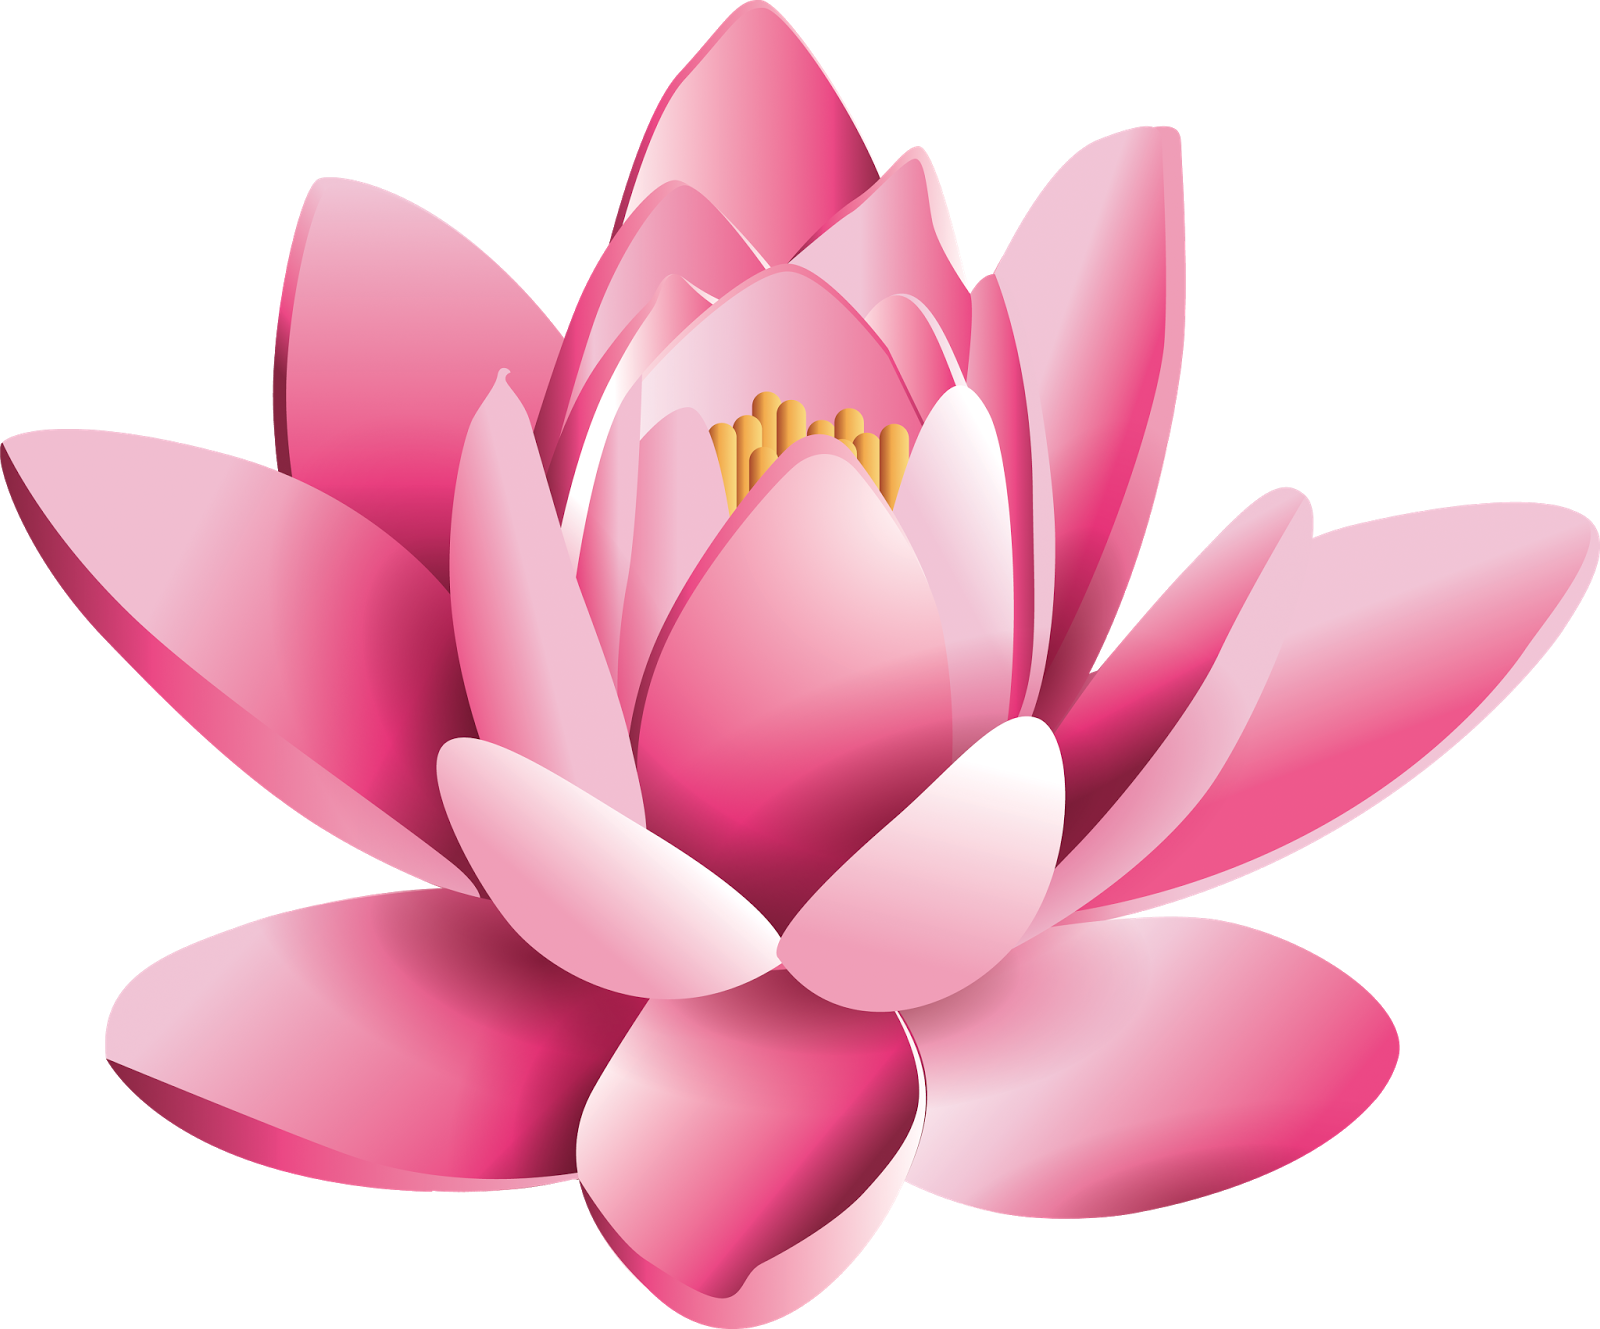 Lotus Flower PNG Image HD